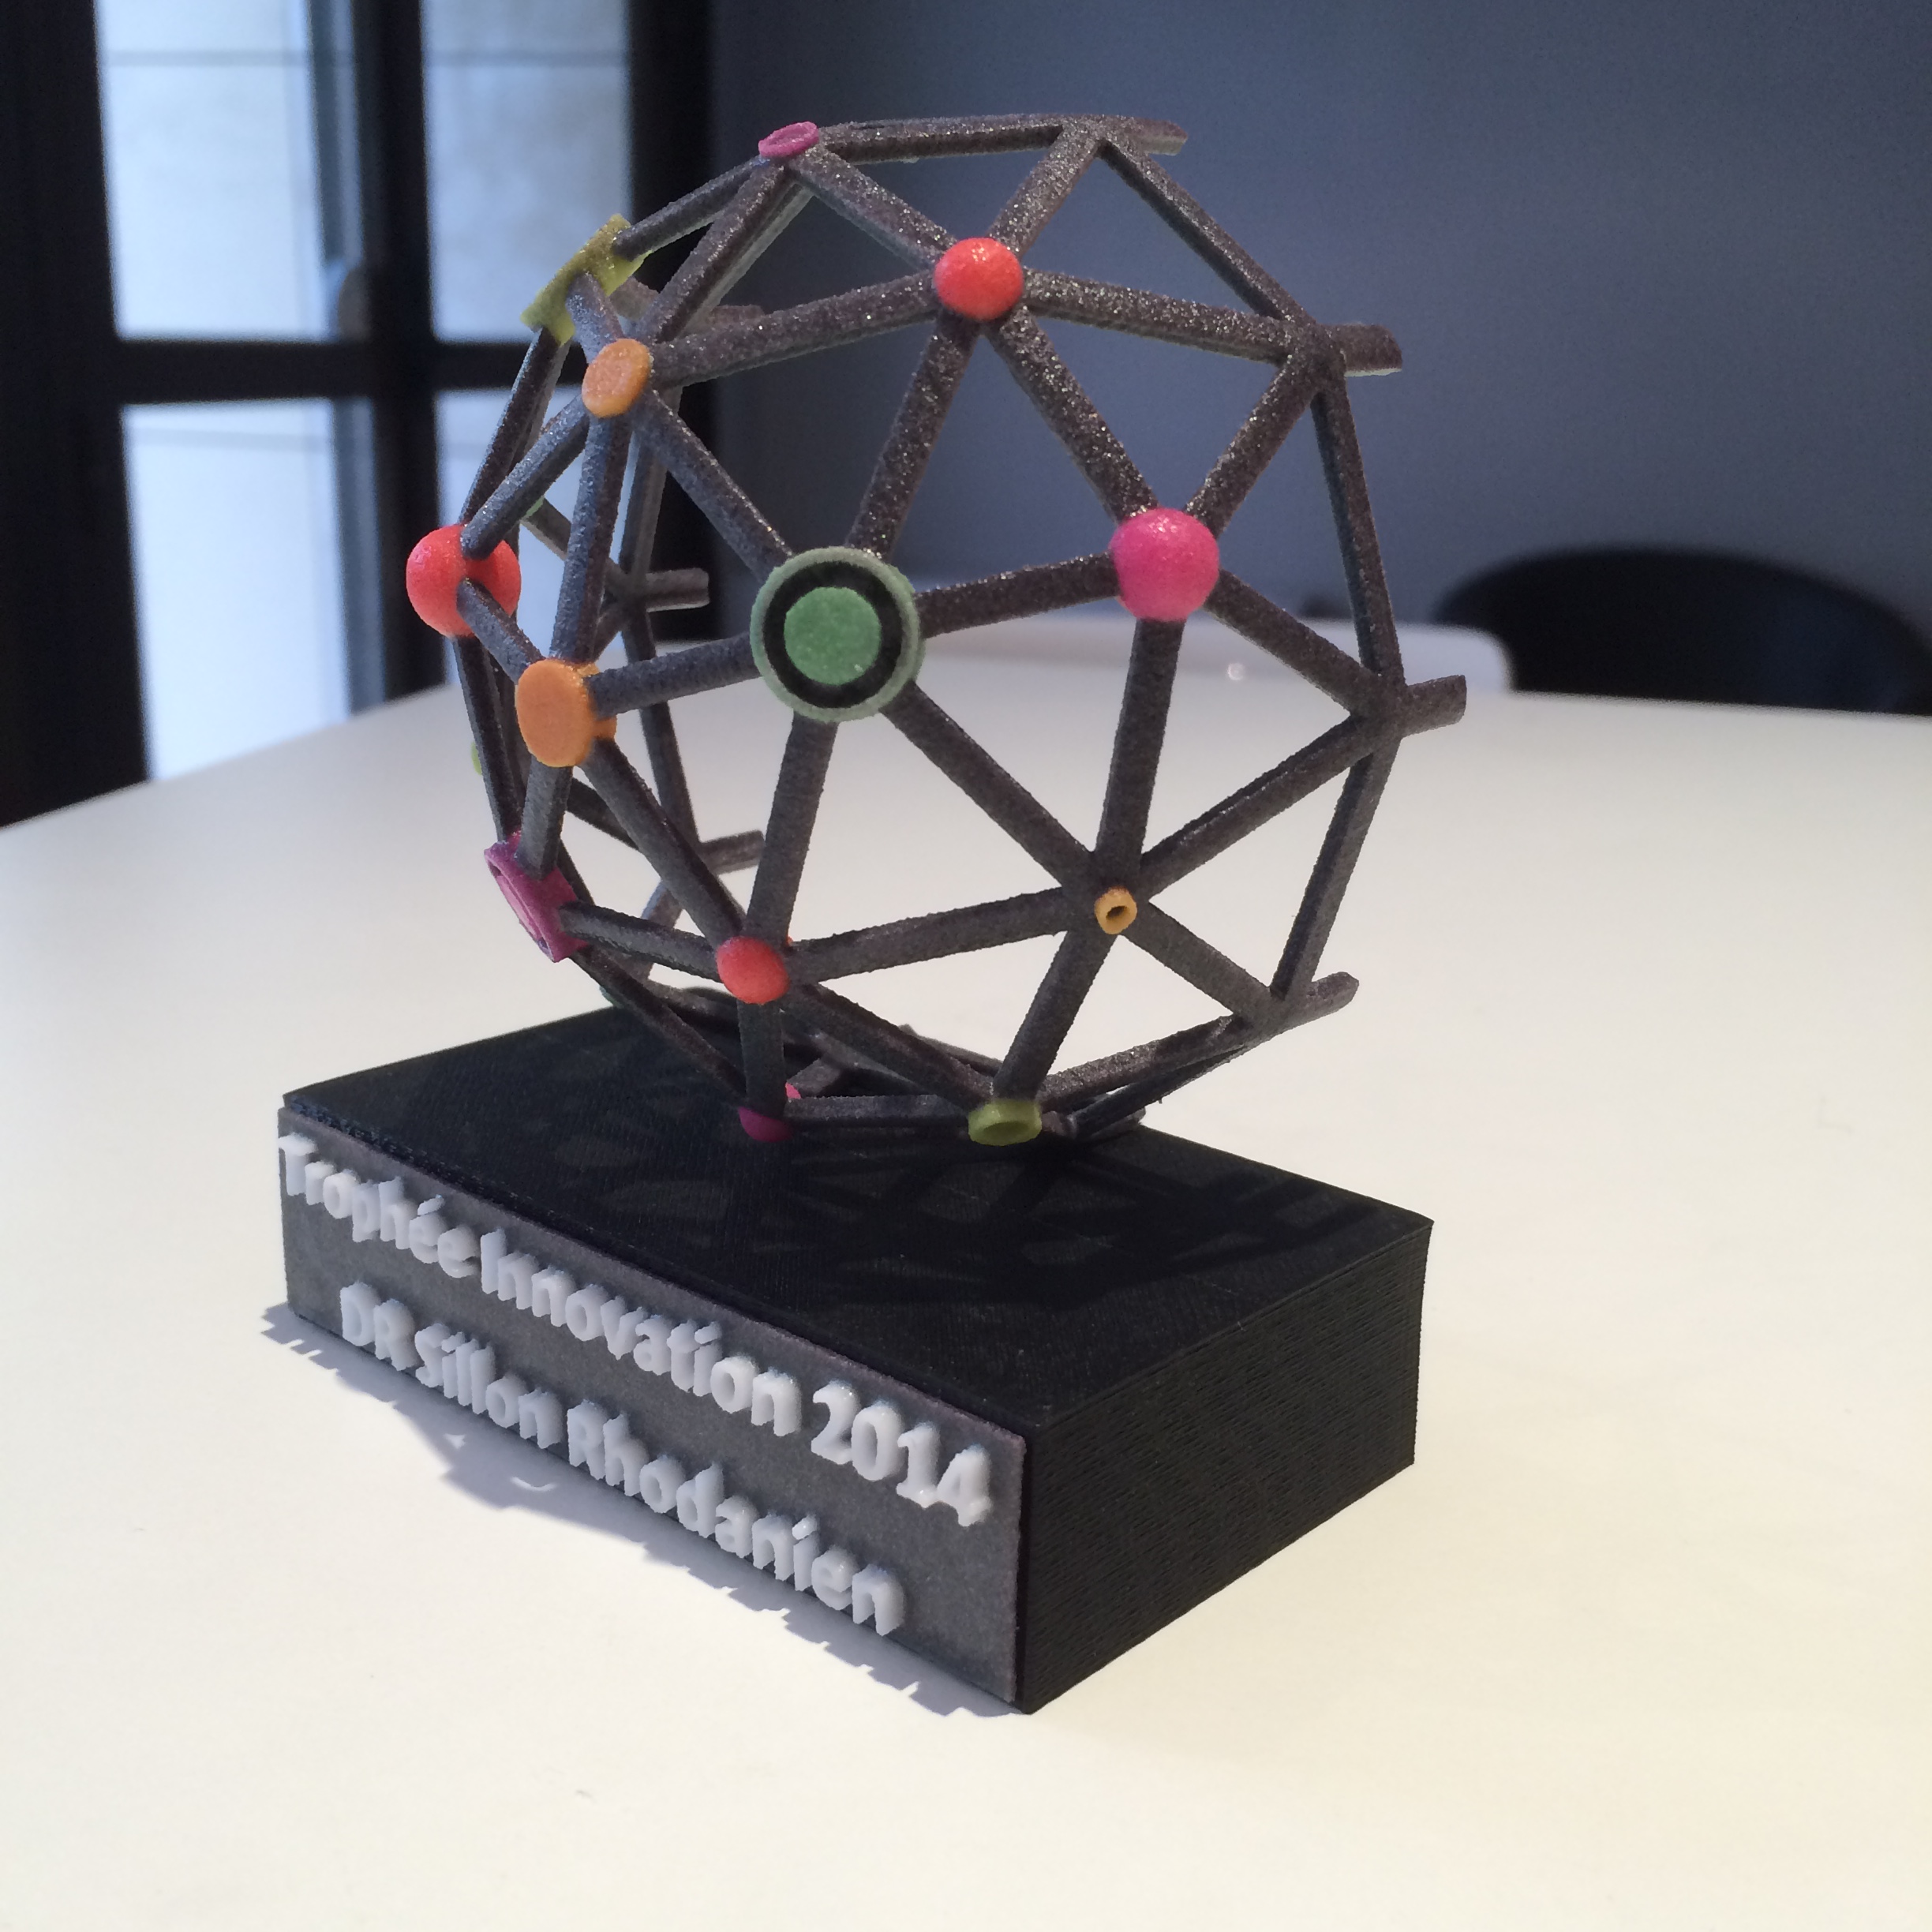 Imprimir un trofeo personalizado en 3D